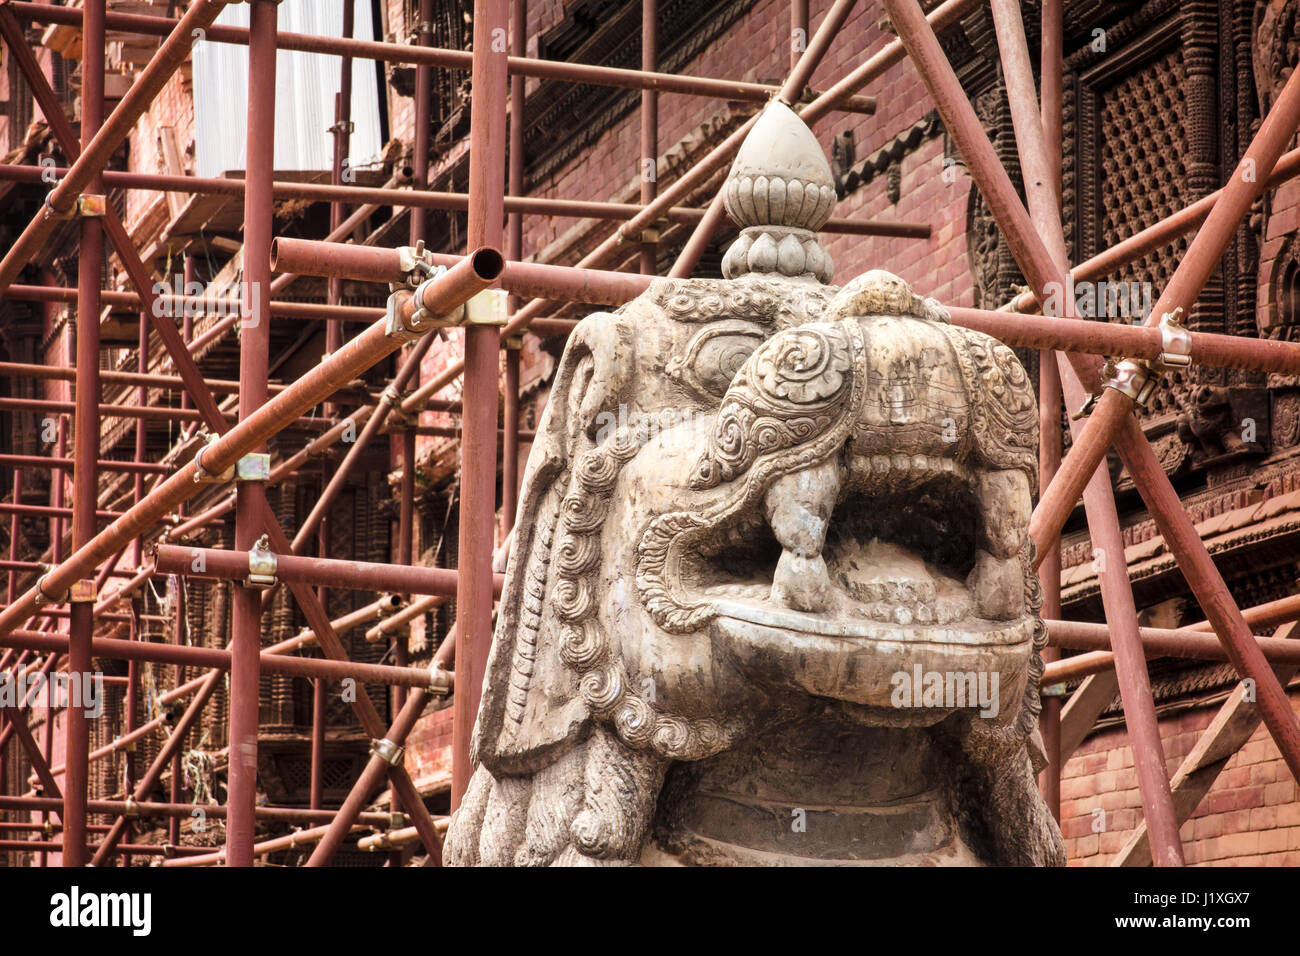 Unterstützung eines der vielen Bauwerke in 2015 Erdbeben beschädigt umgibt Gerüst Satz bis zu eine kunstvoll geschnitzte Statue. Kathmandu Durbar Square. Stockfoto